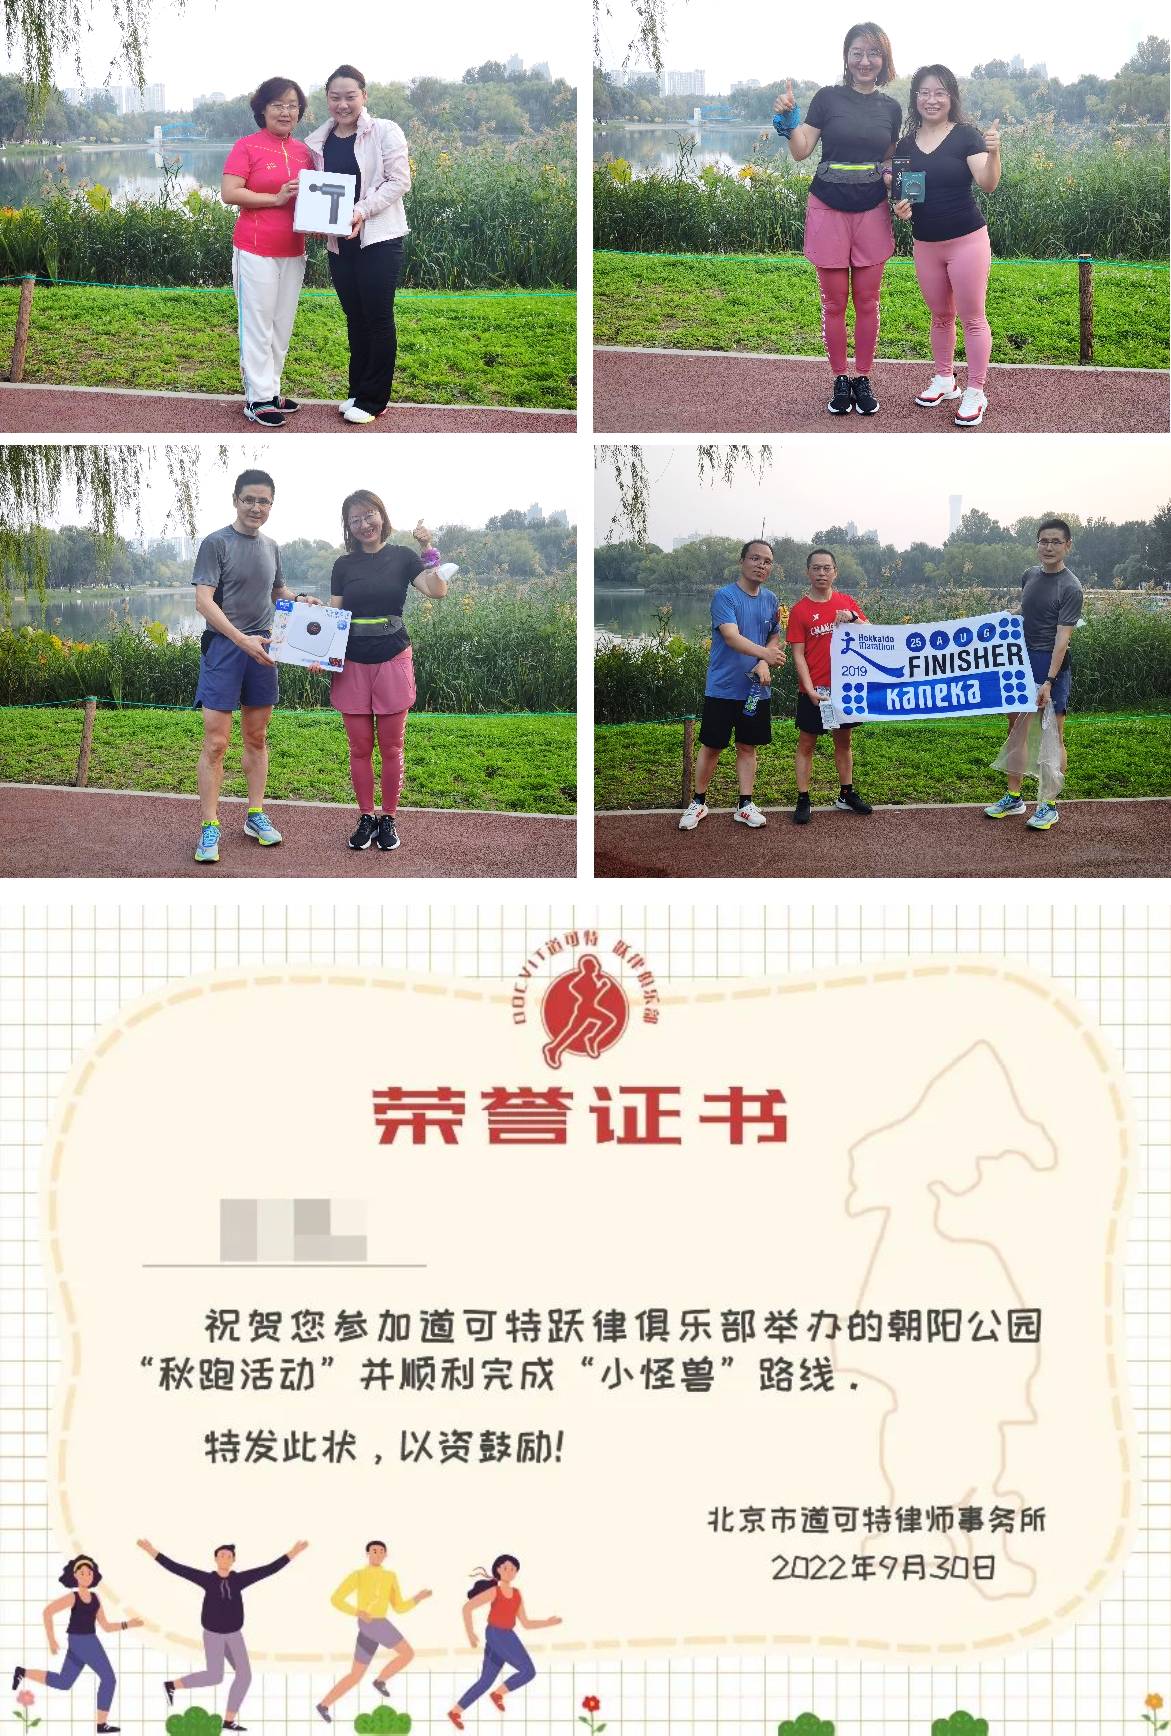 道可特北京办公室“秋风拾礼 举步成金”户外跑运动